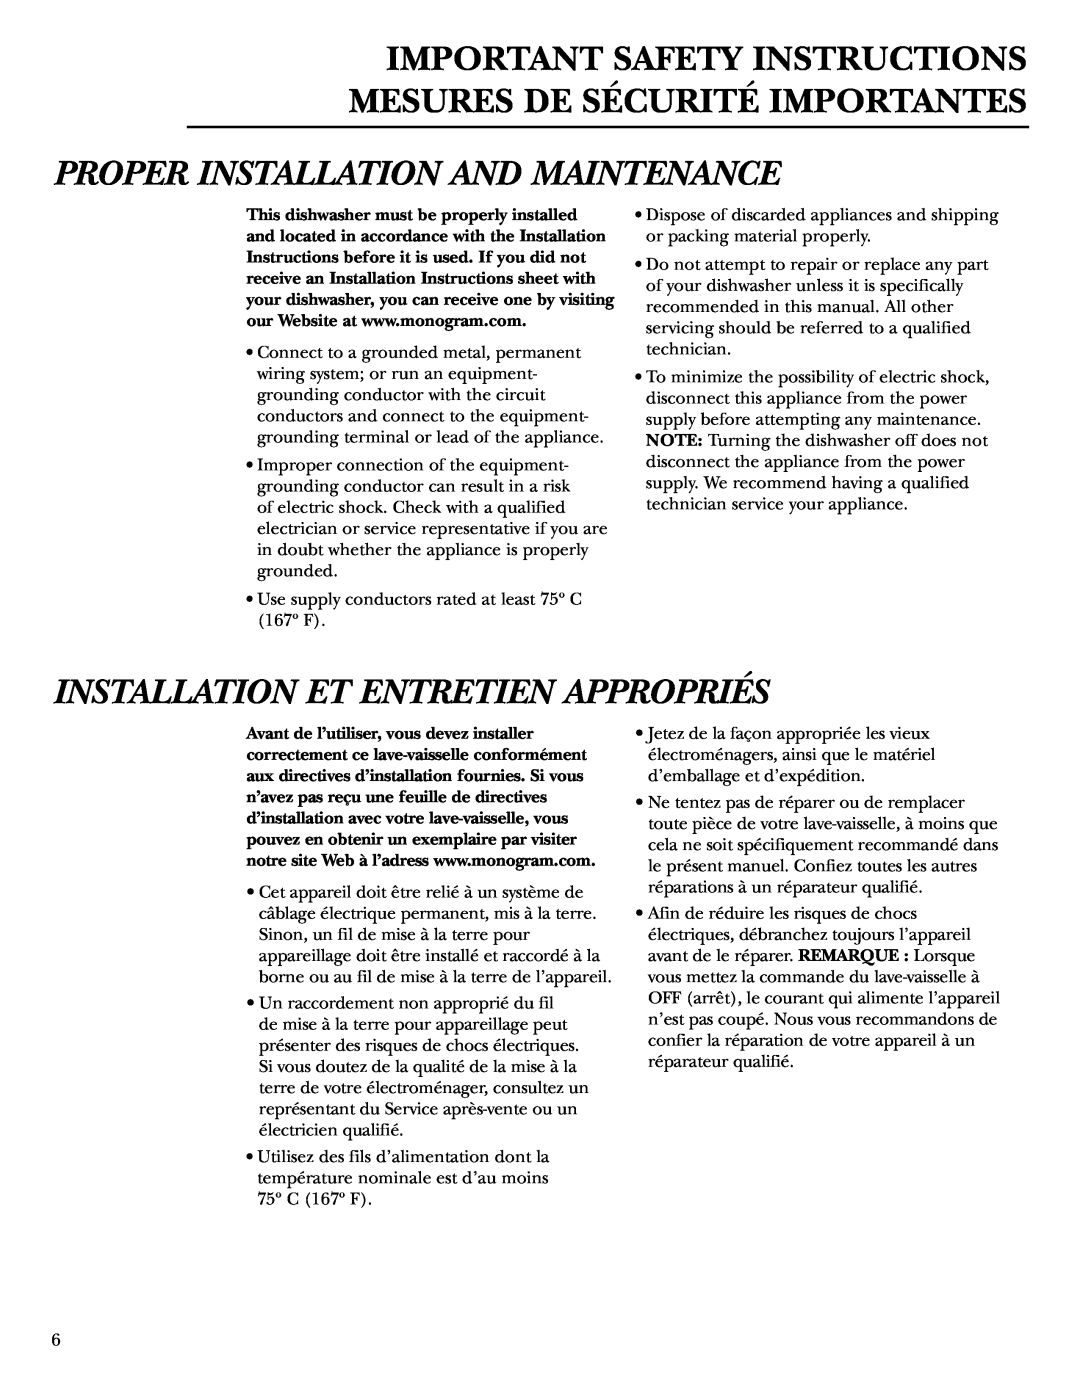 GE zbd6800k owner manual Proper Installation And Maintenance, Installation Et Entretien Appropriés 